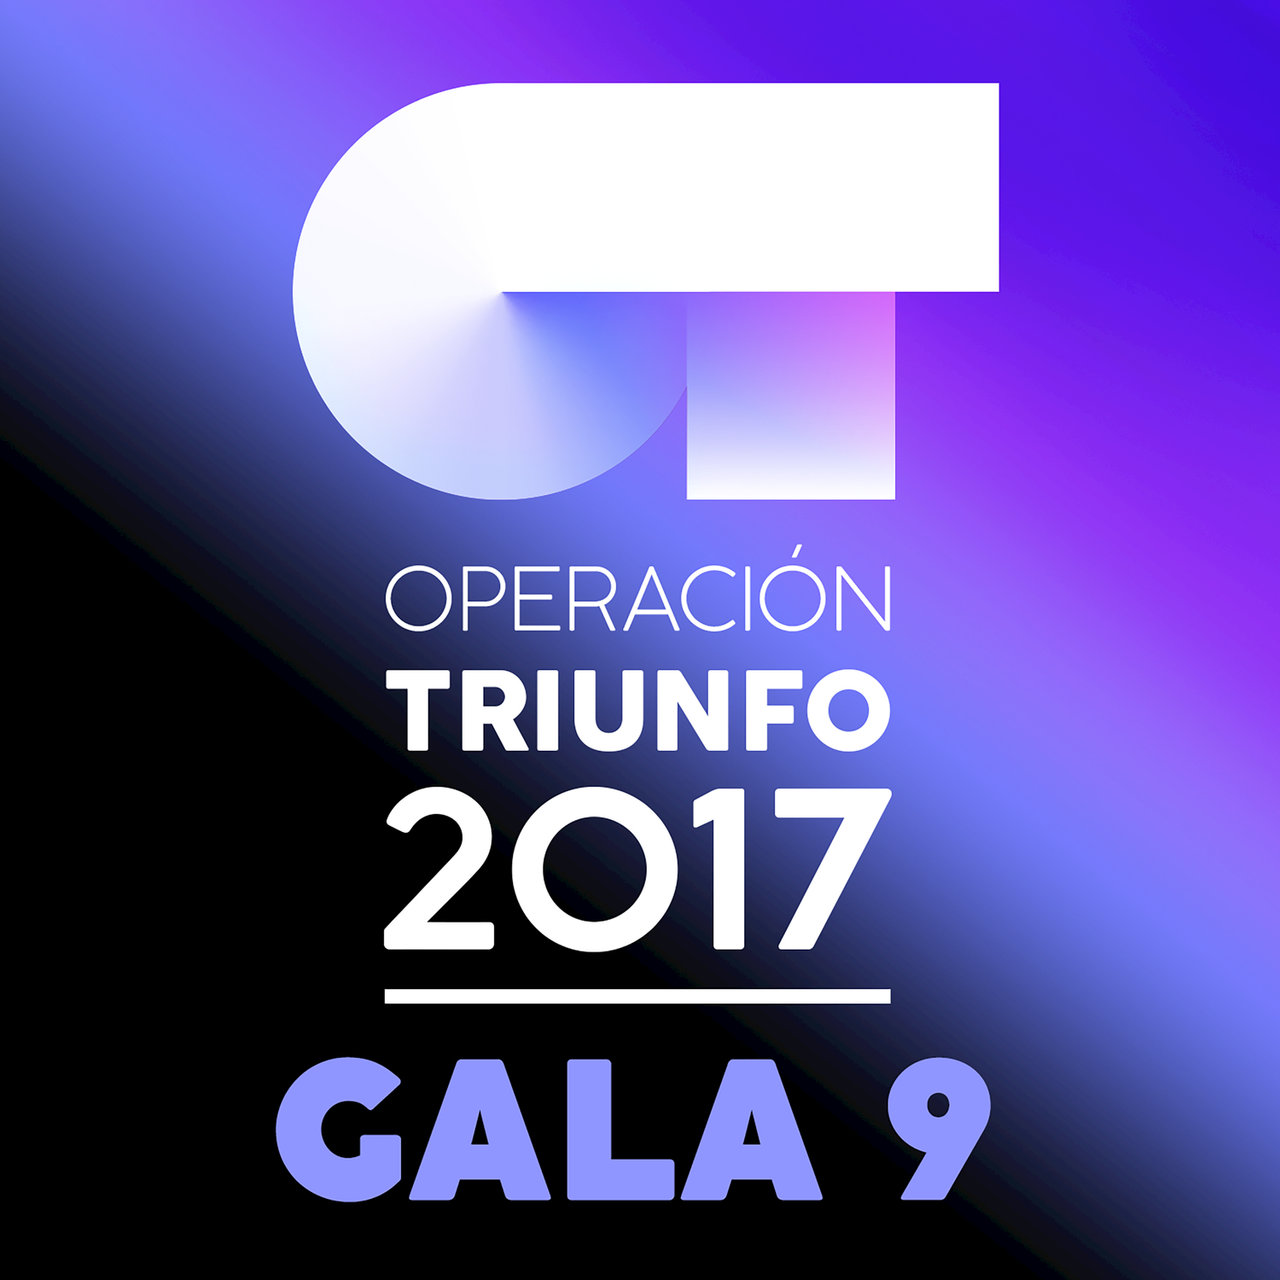 Operación Triunfo 2017 OT Gala 9 (Operación Triunfo 2017) cover artwork